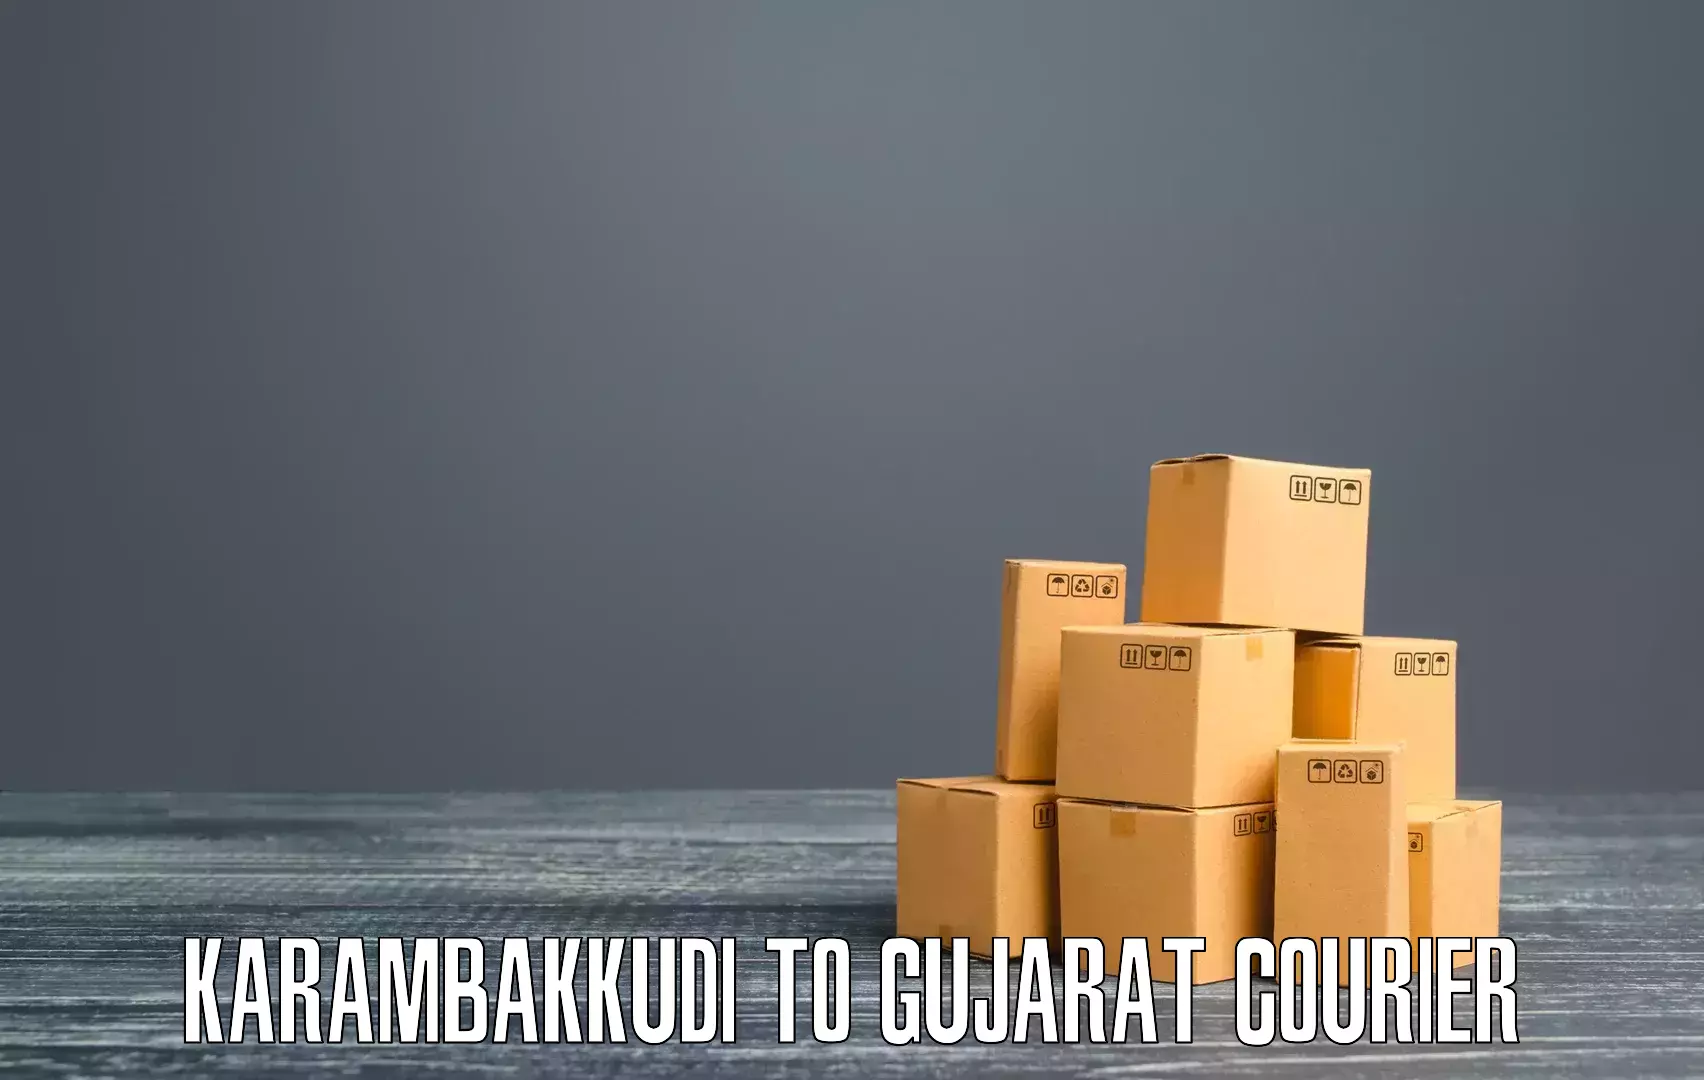 24/7 courier service in Karambakkudi to Vijapur